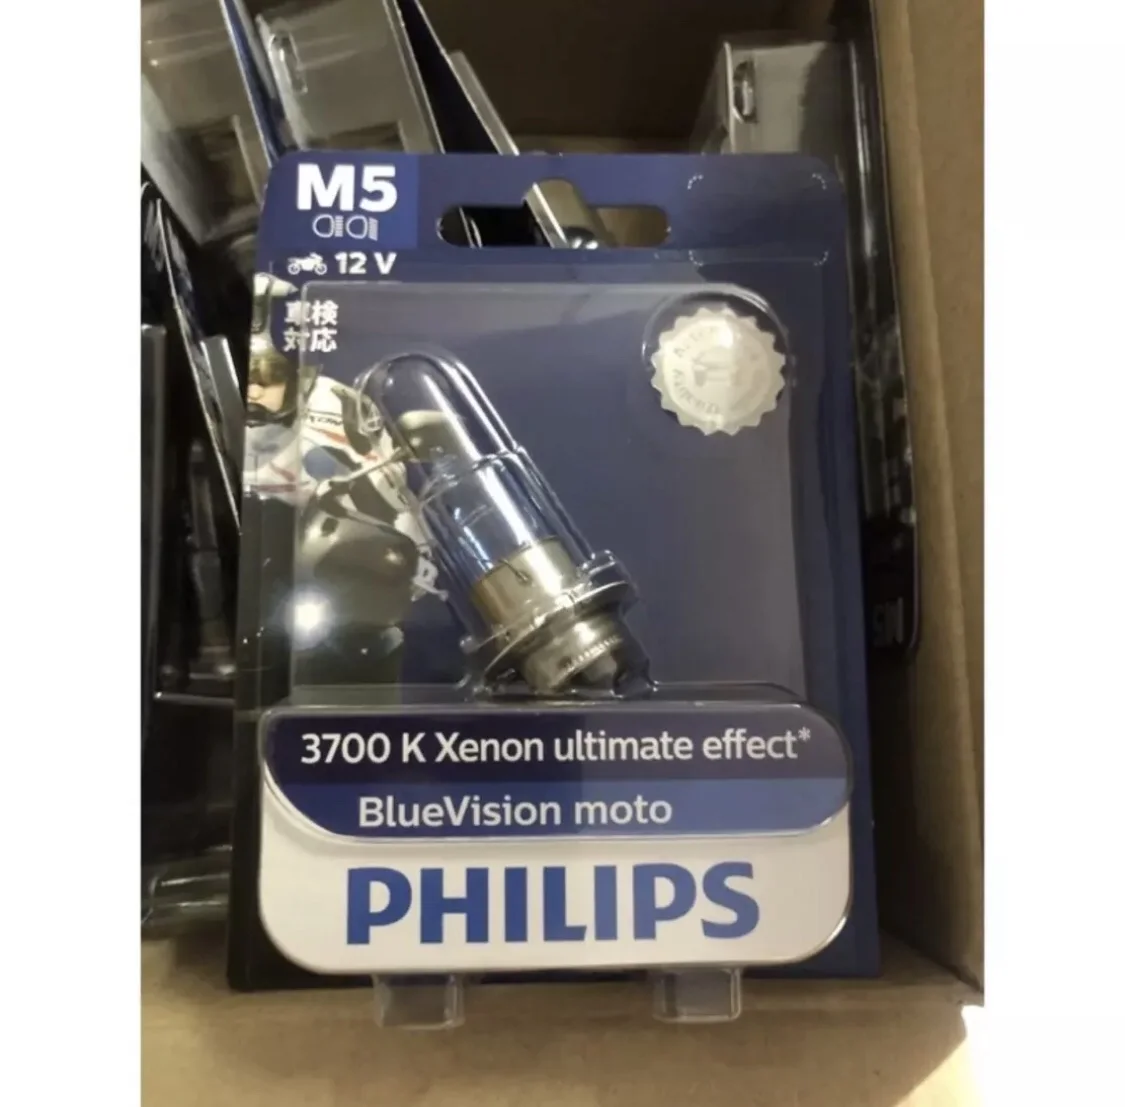 แท้ชัวร์ หลอดไฟหน้า PHILIPS M5 BLUE VISION แสงสว่างและขาวกว่าหลอดเดิมติดรถทั่ว